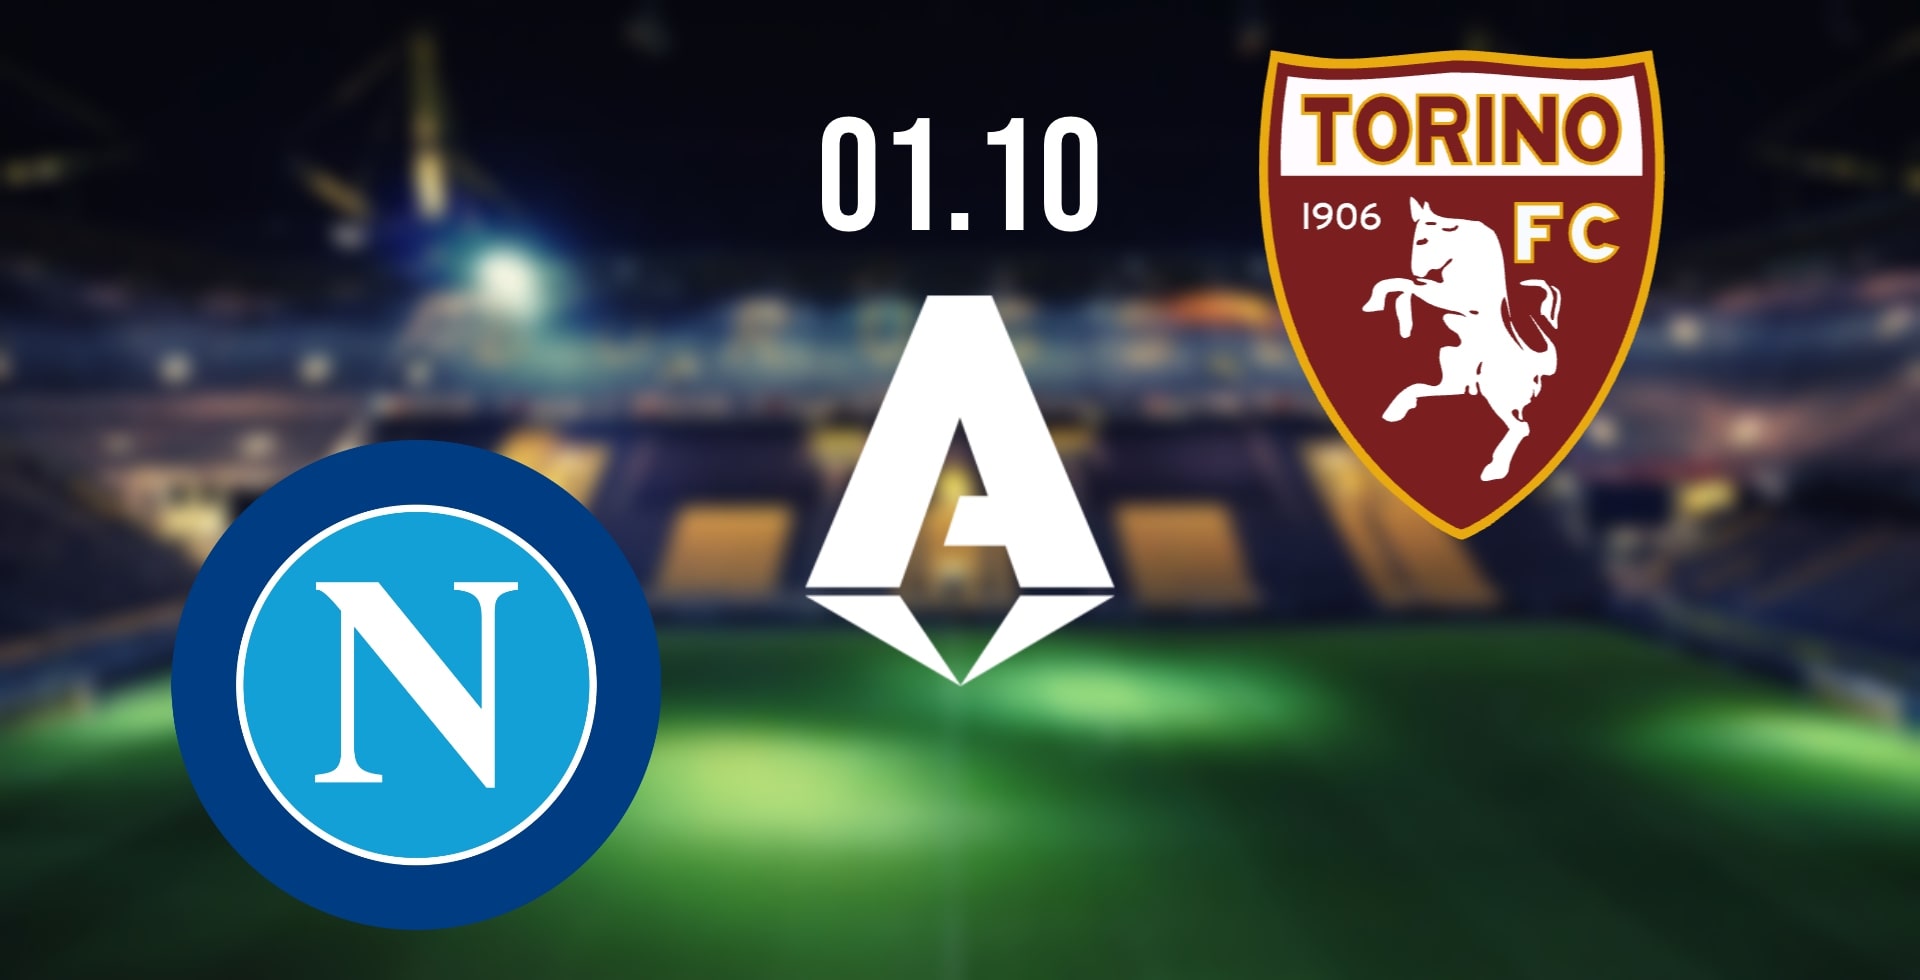 Napoli vs Torino Prediction: Serie A Match on 01.10.2022